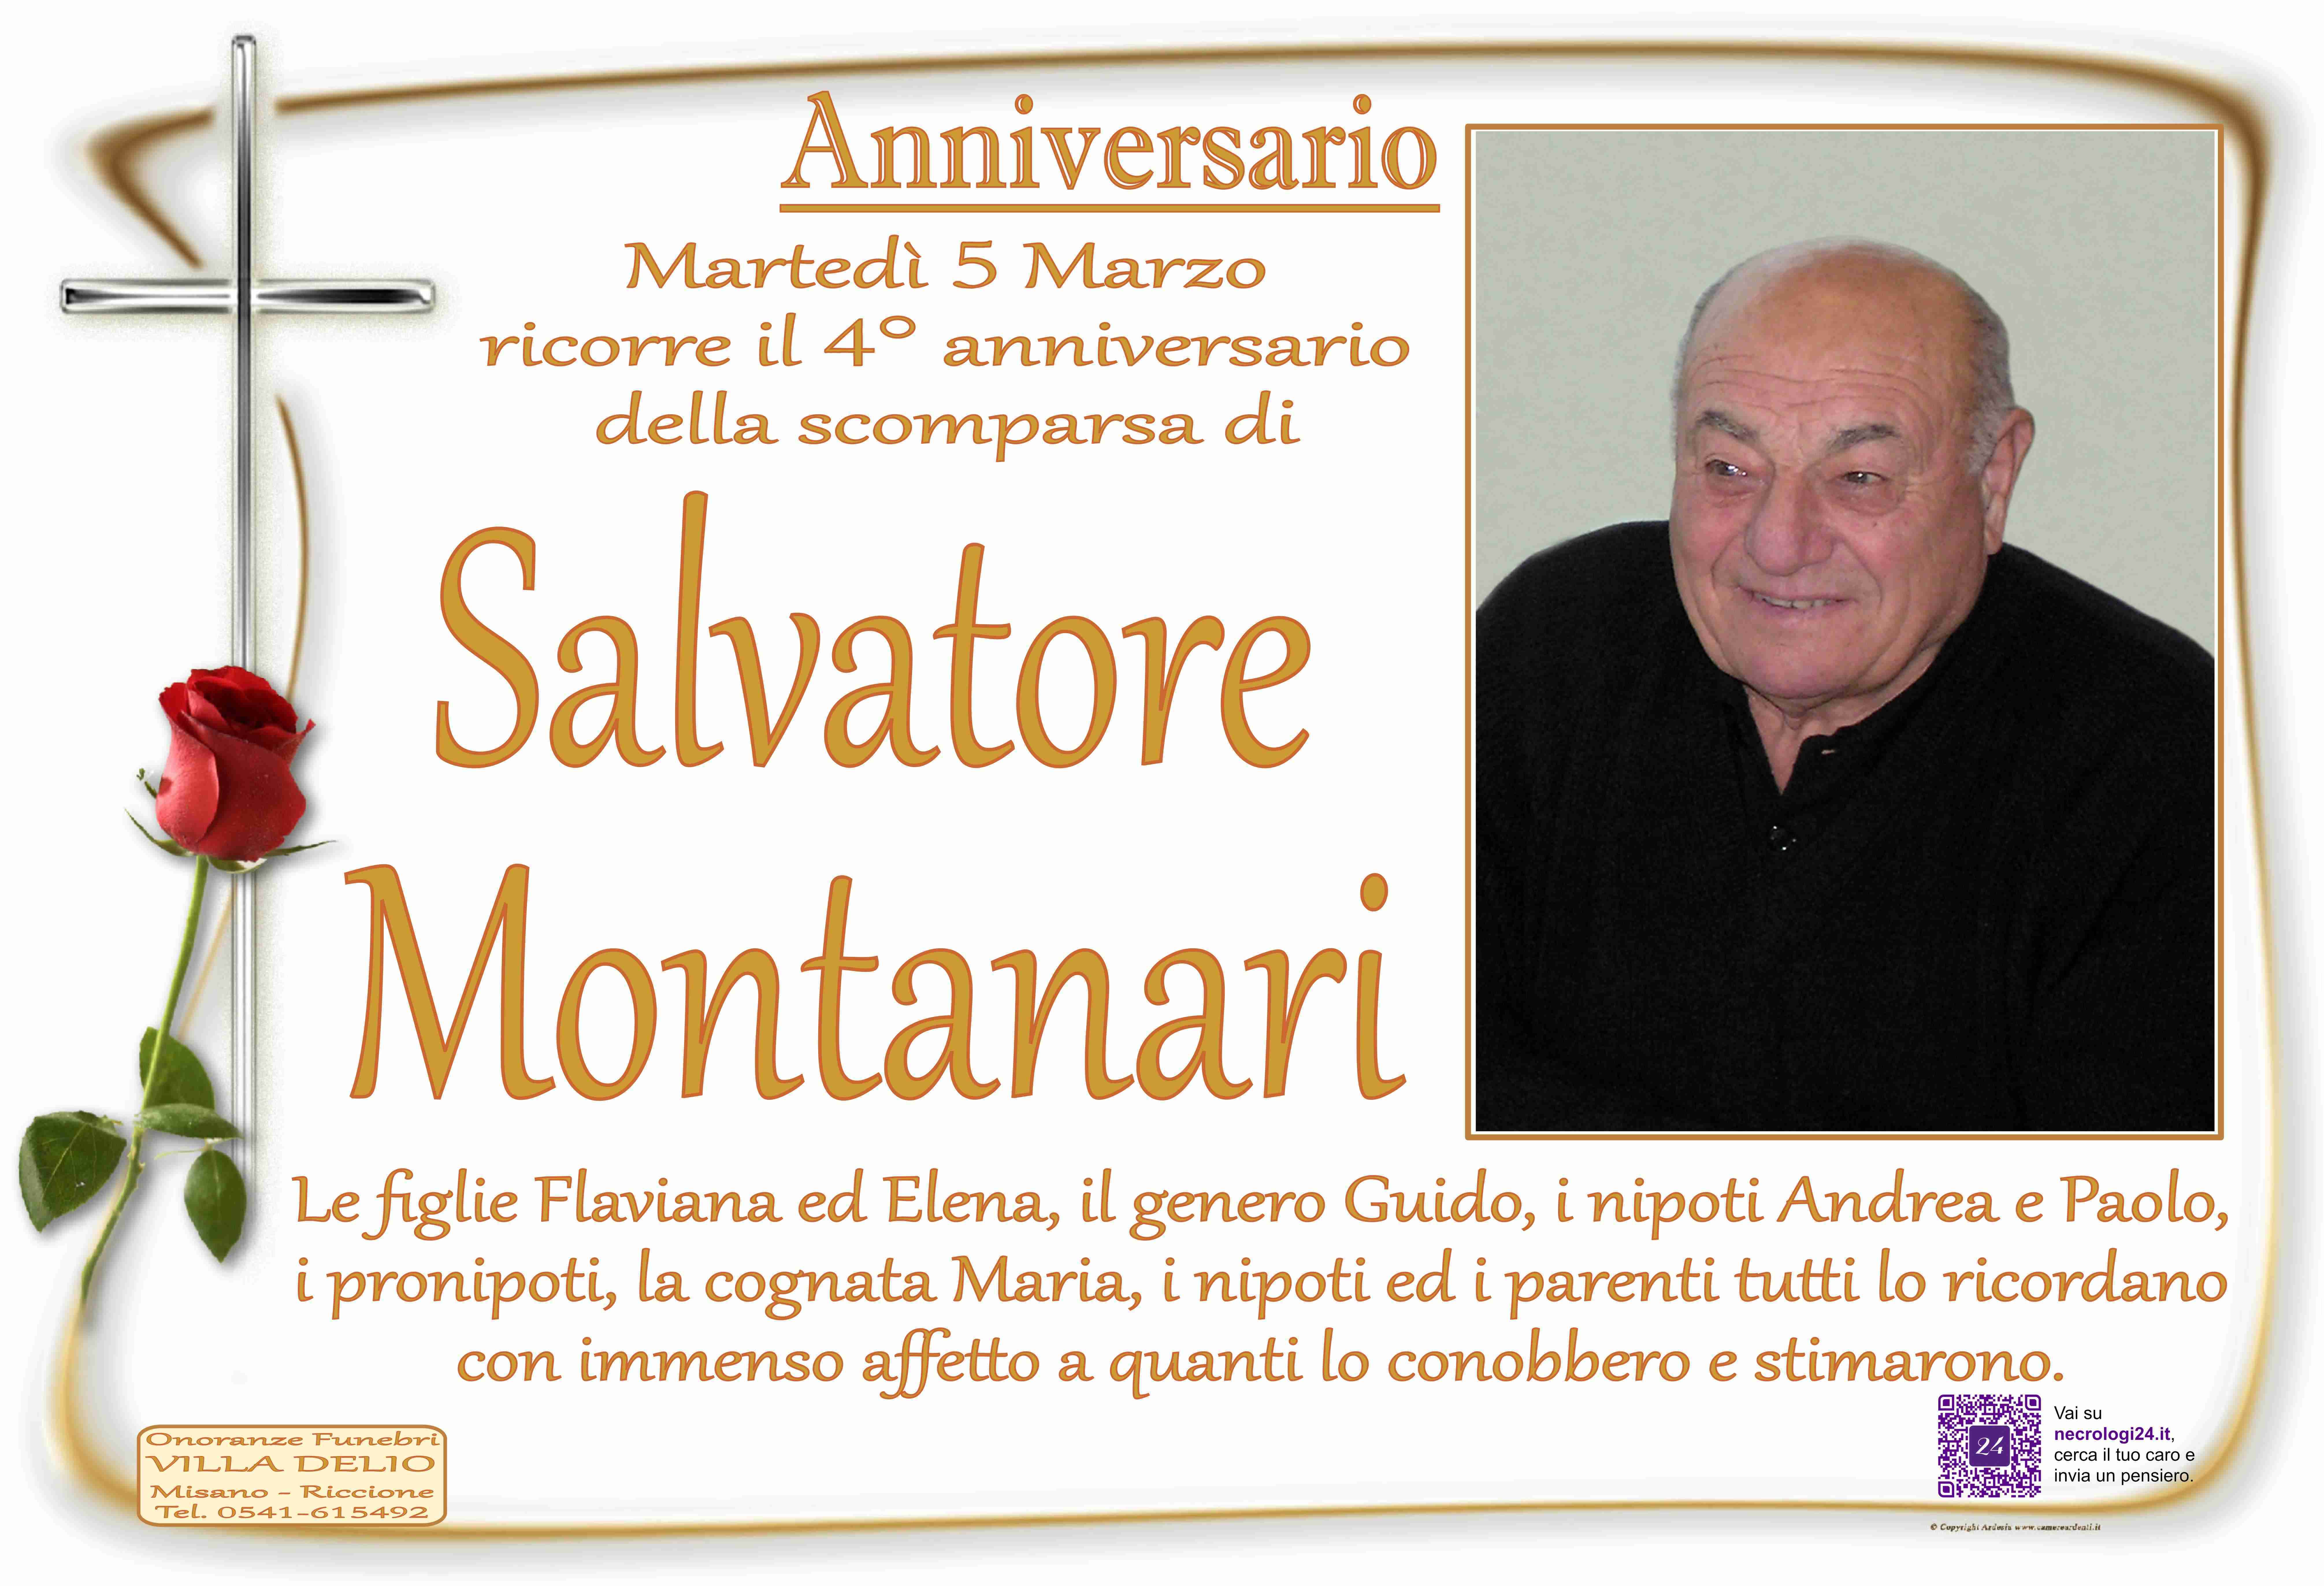 Salvatore Montanari